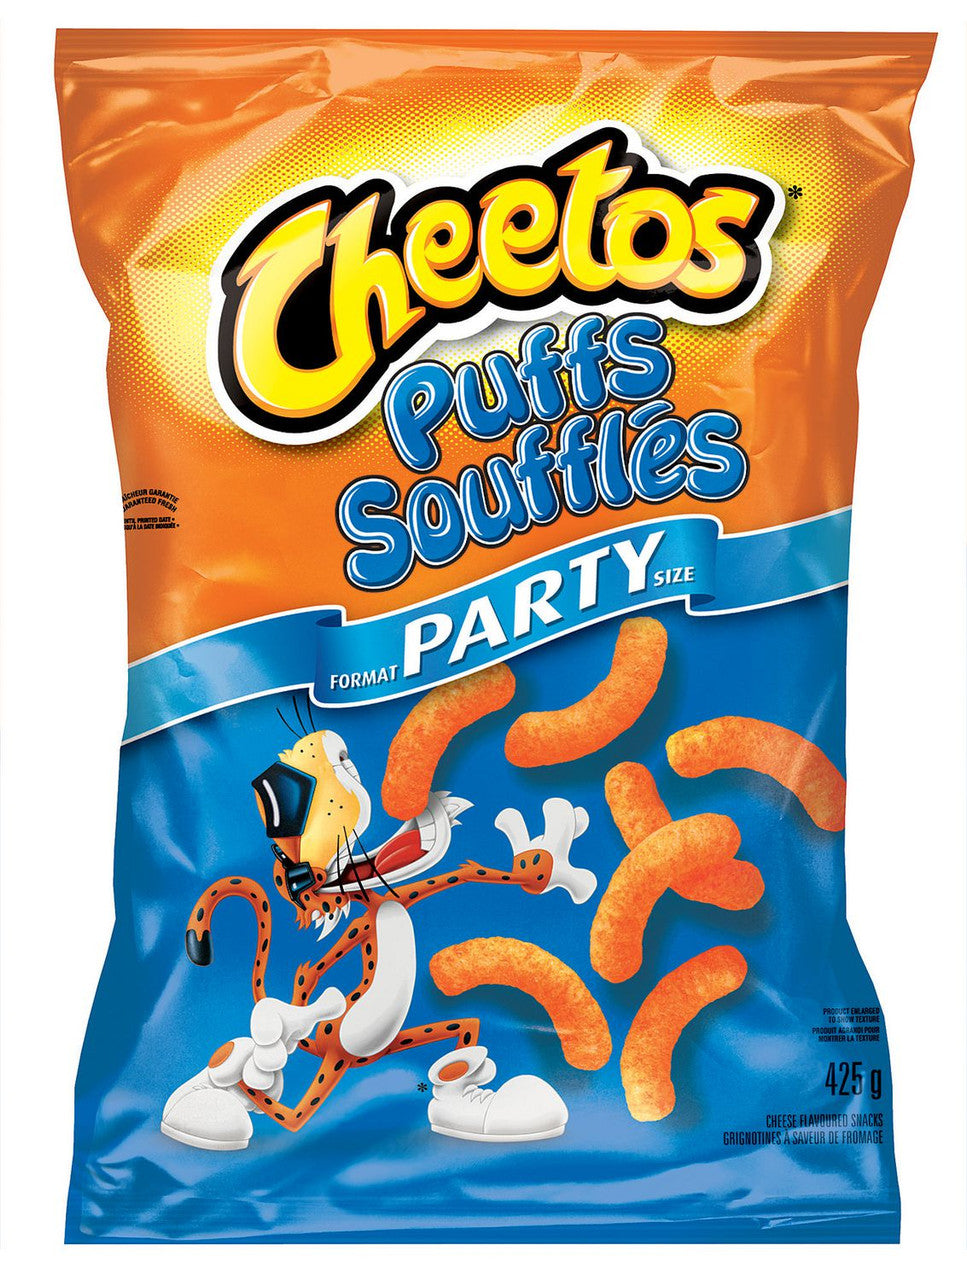 Cheetos Crunchy Flamin Hot Party Size 15 Oz